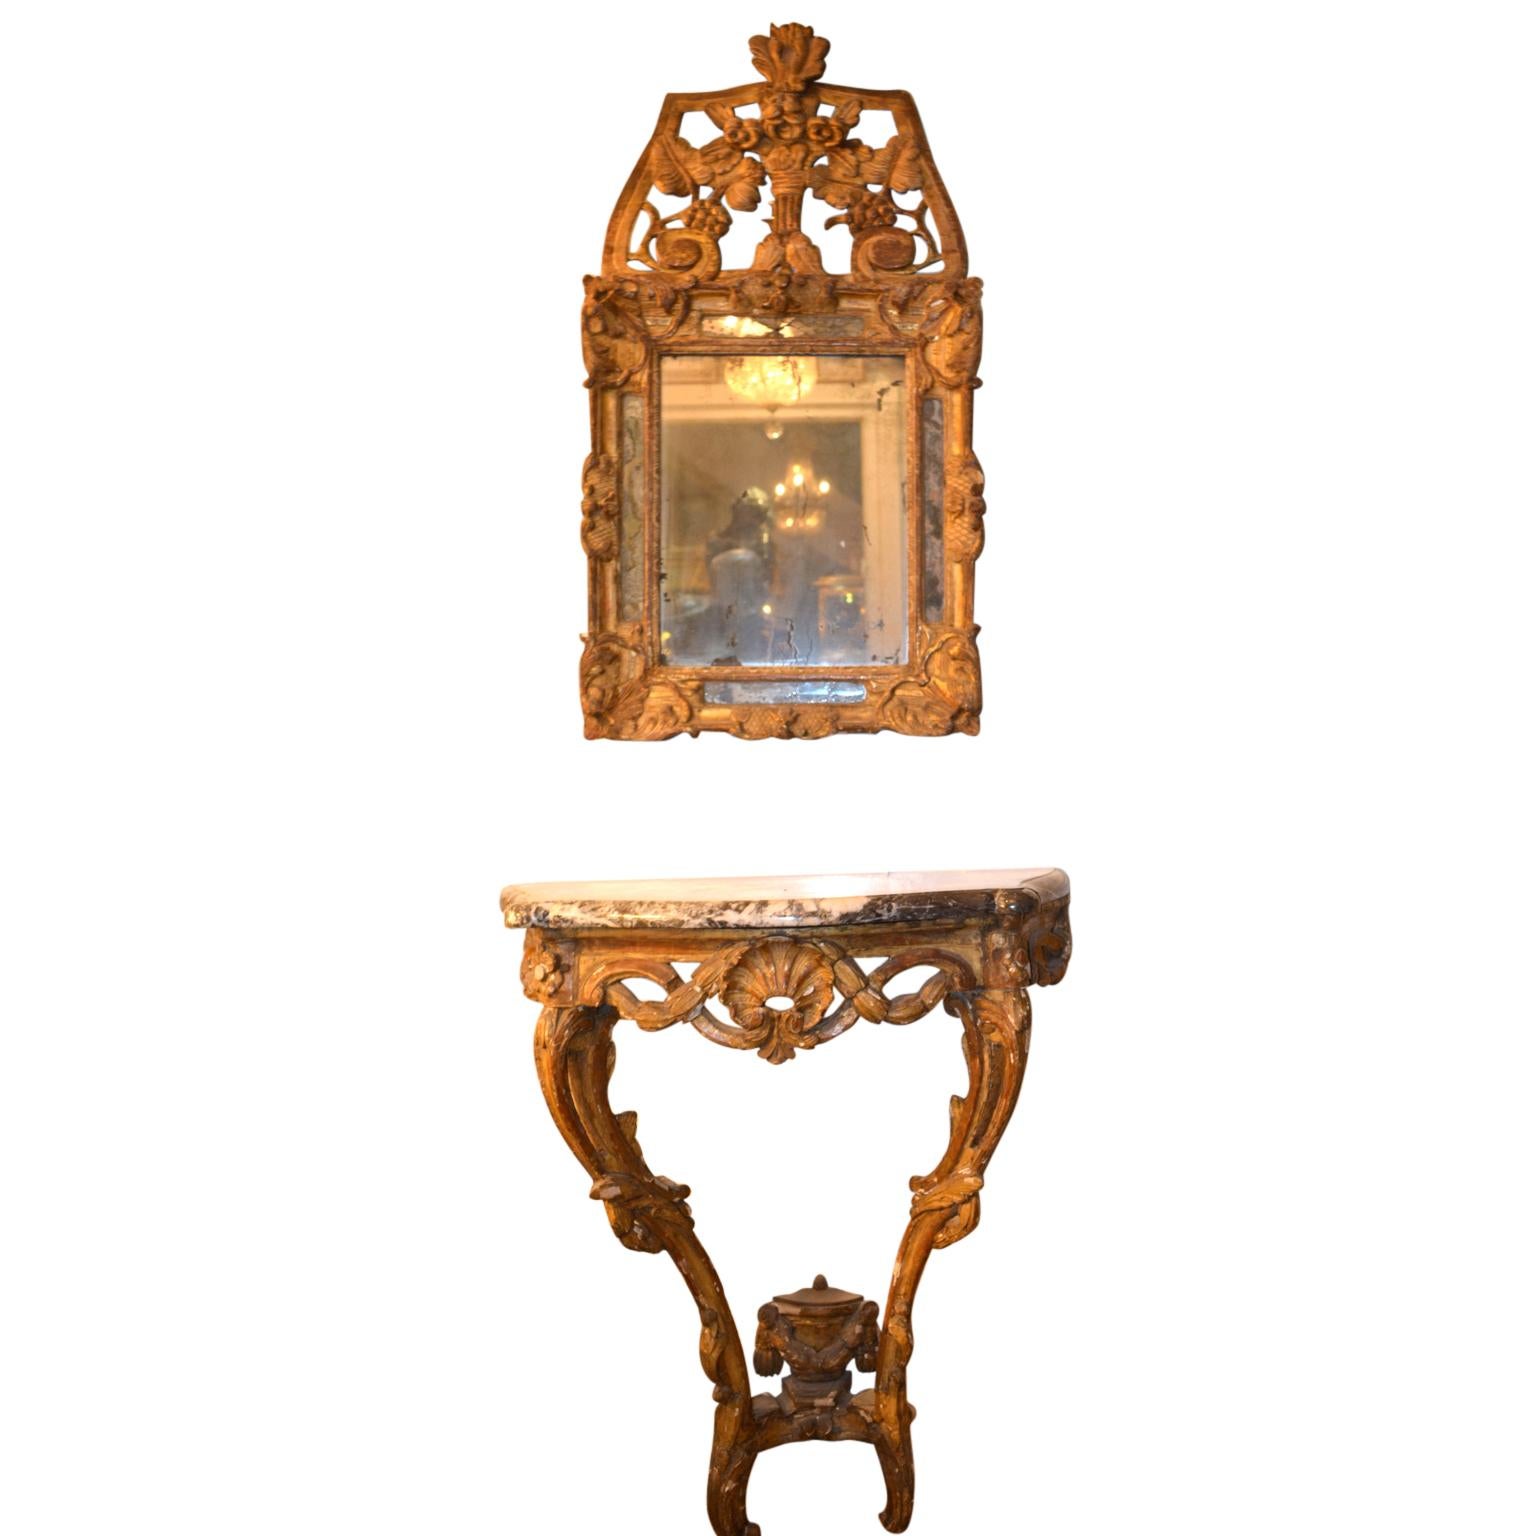 
Ein kleiner Konsolentisch aus geschnitztem und vergoldetem Buchenholz aus der Zeit Ludwigs XV. Die palmenumrankten Rocaille-Cabriole-Beine sind durch eine ebenfalls geschnitzte Bahre verbunden, die mit einer geschnitzten, geschwungenen Urne gekrönt